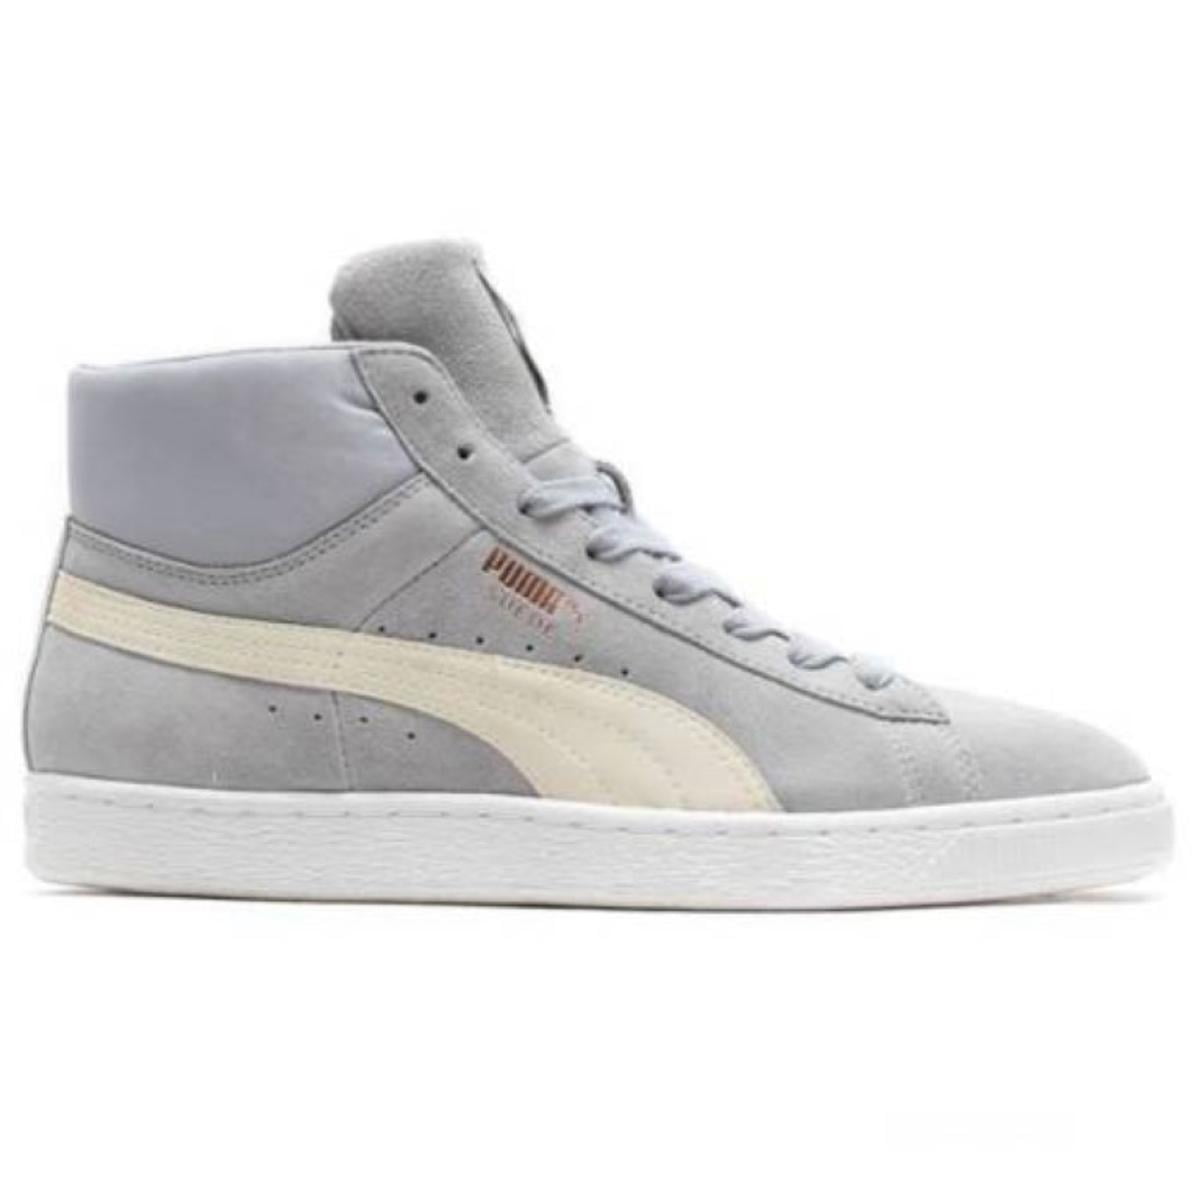 Puma Suede Mid Classic Mens Grey Sneakers Walmart.com